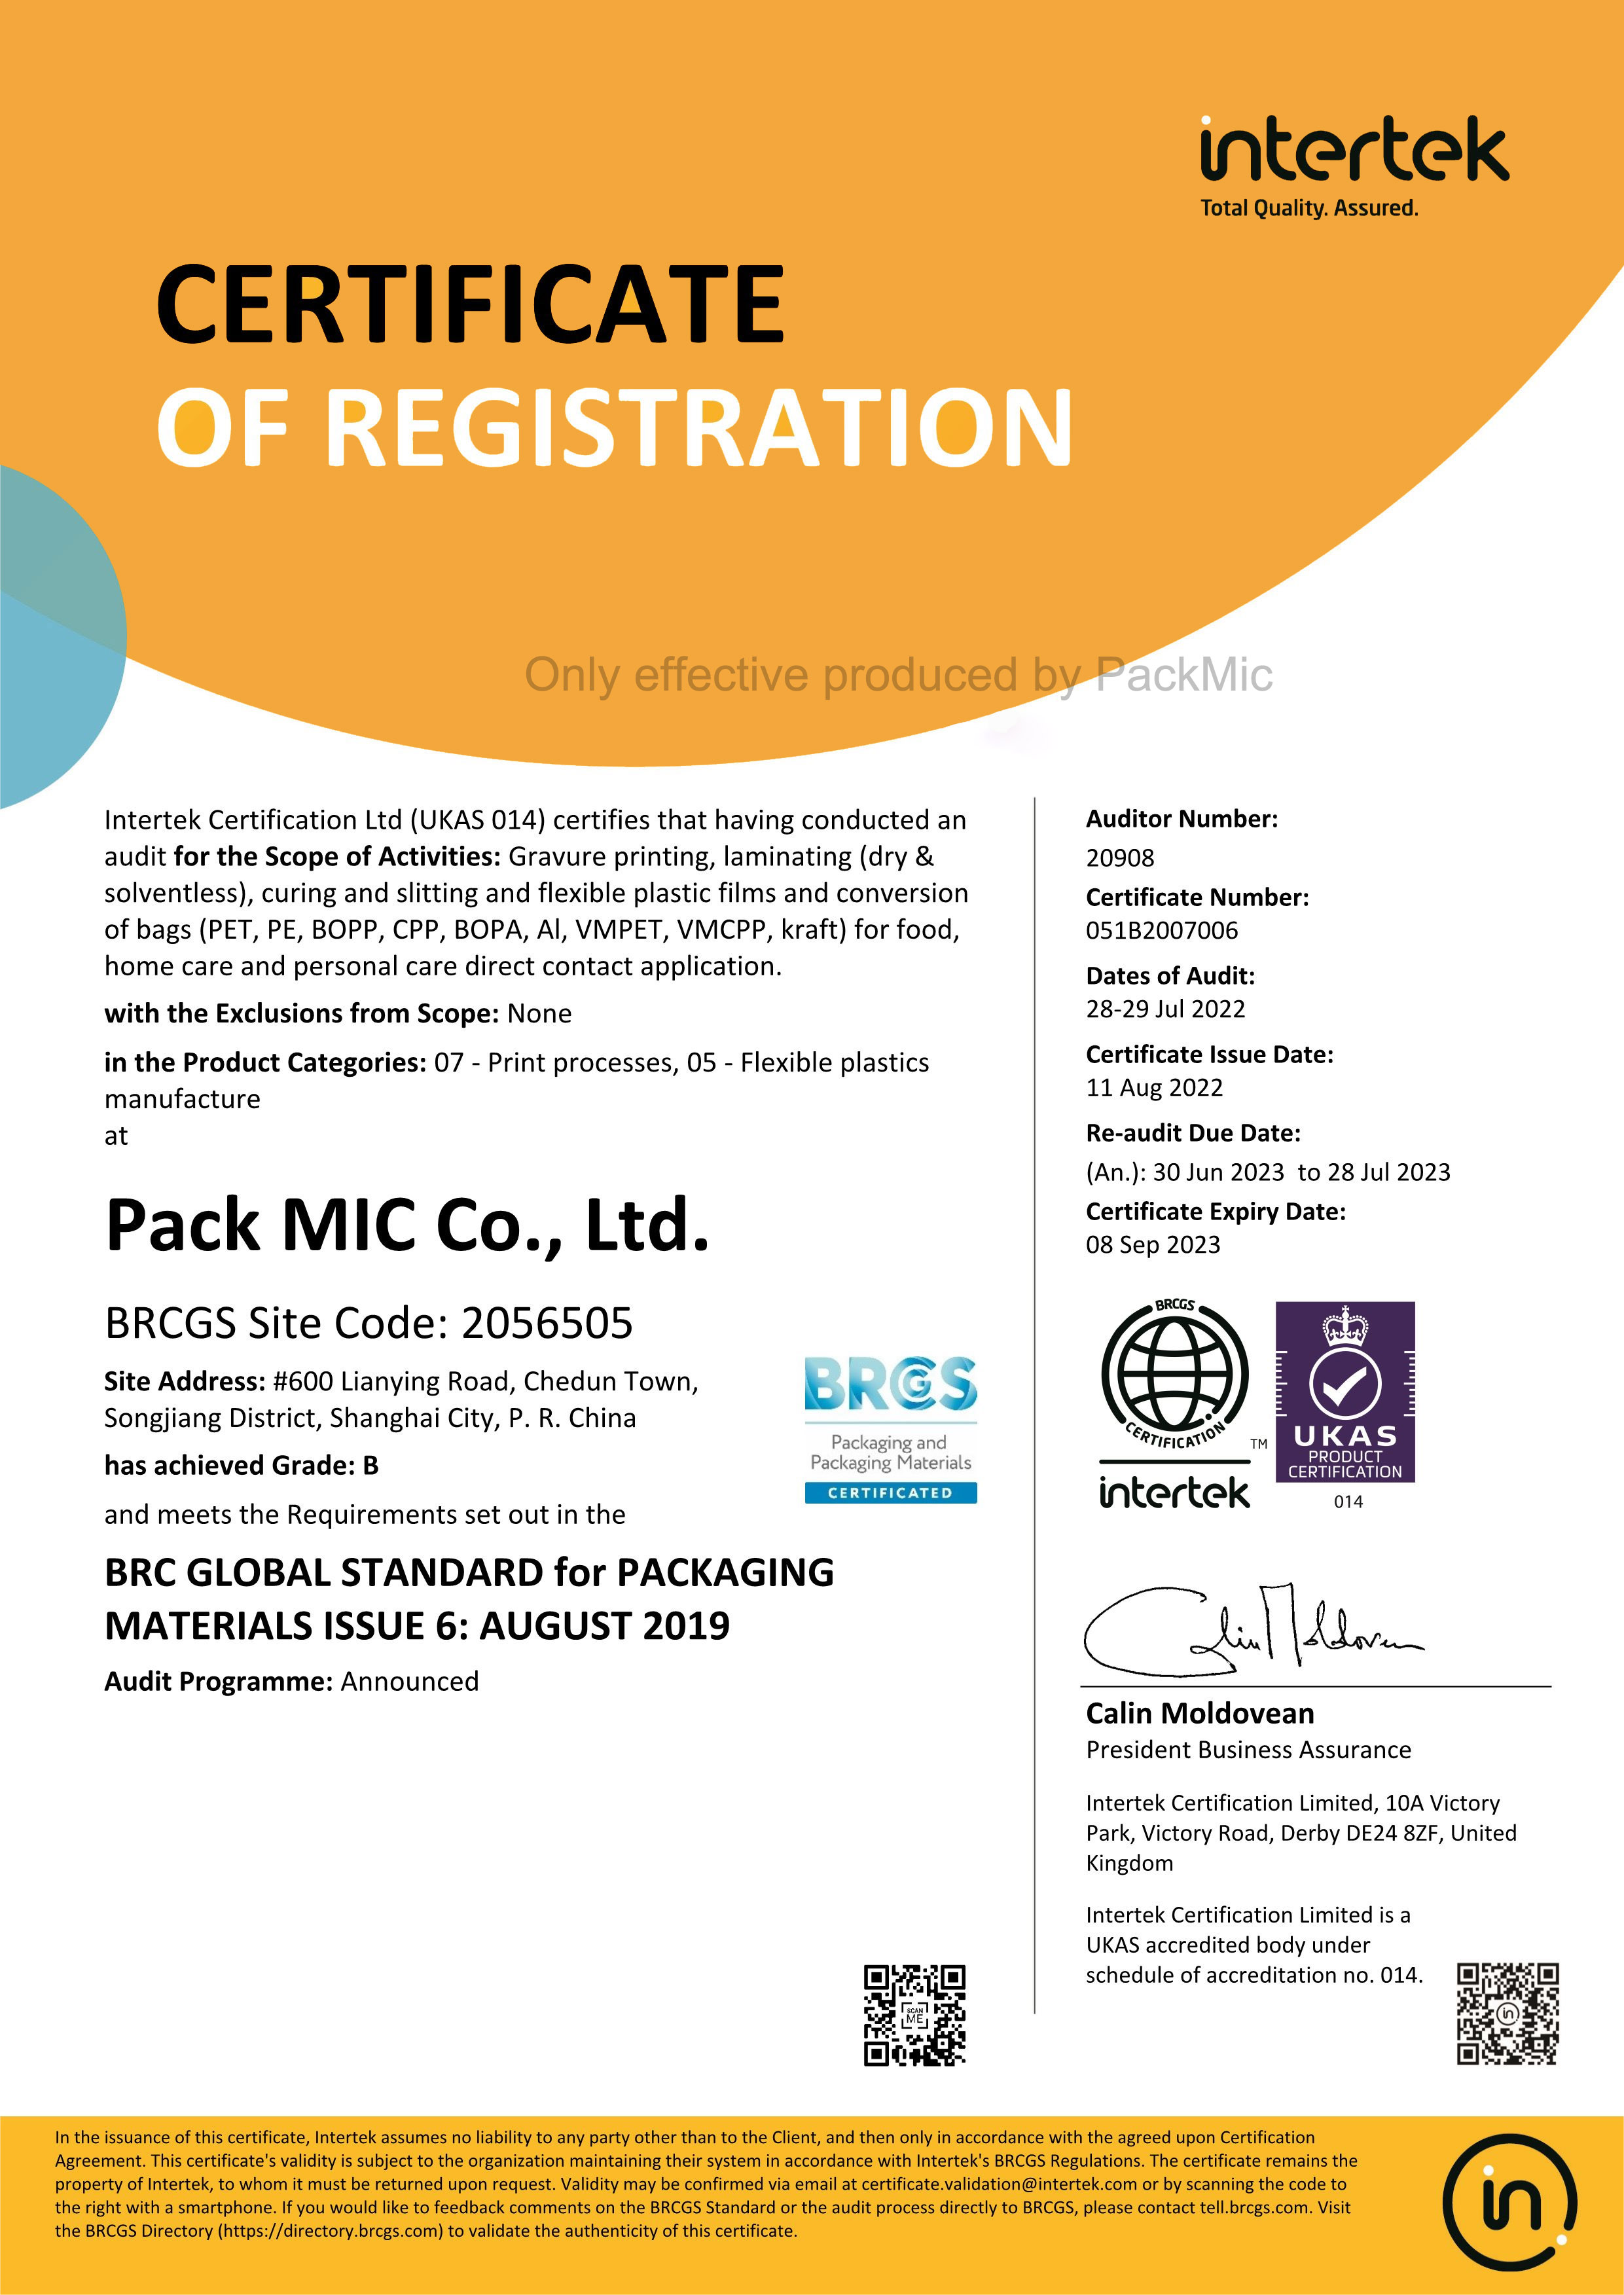 Packmic prošel každoročním auditem intertetu.Získali jsme nový certifikát BRCGS.